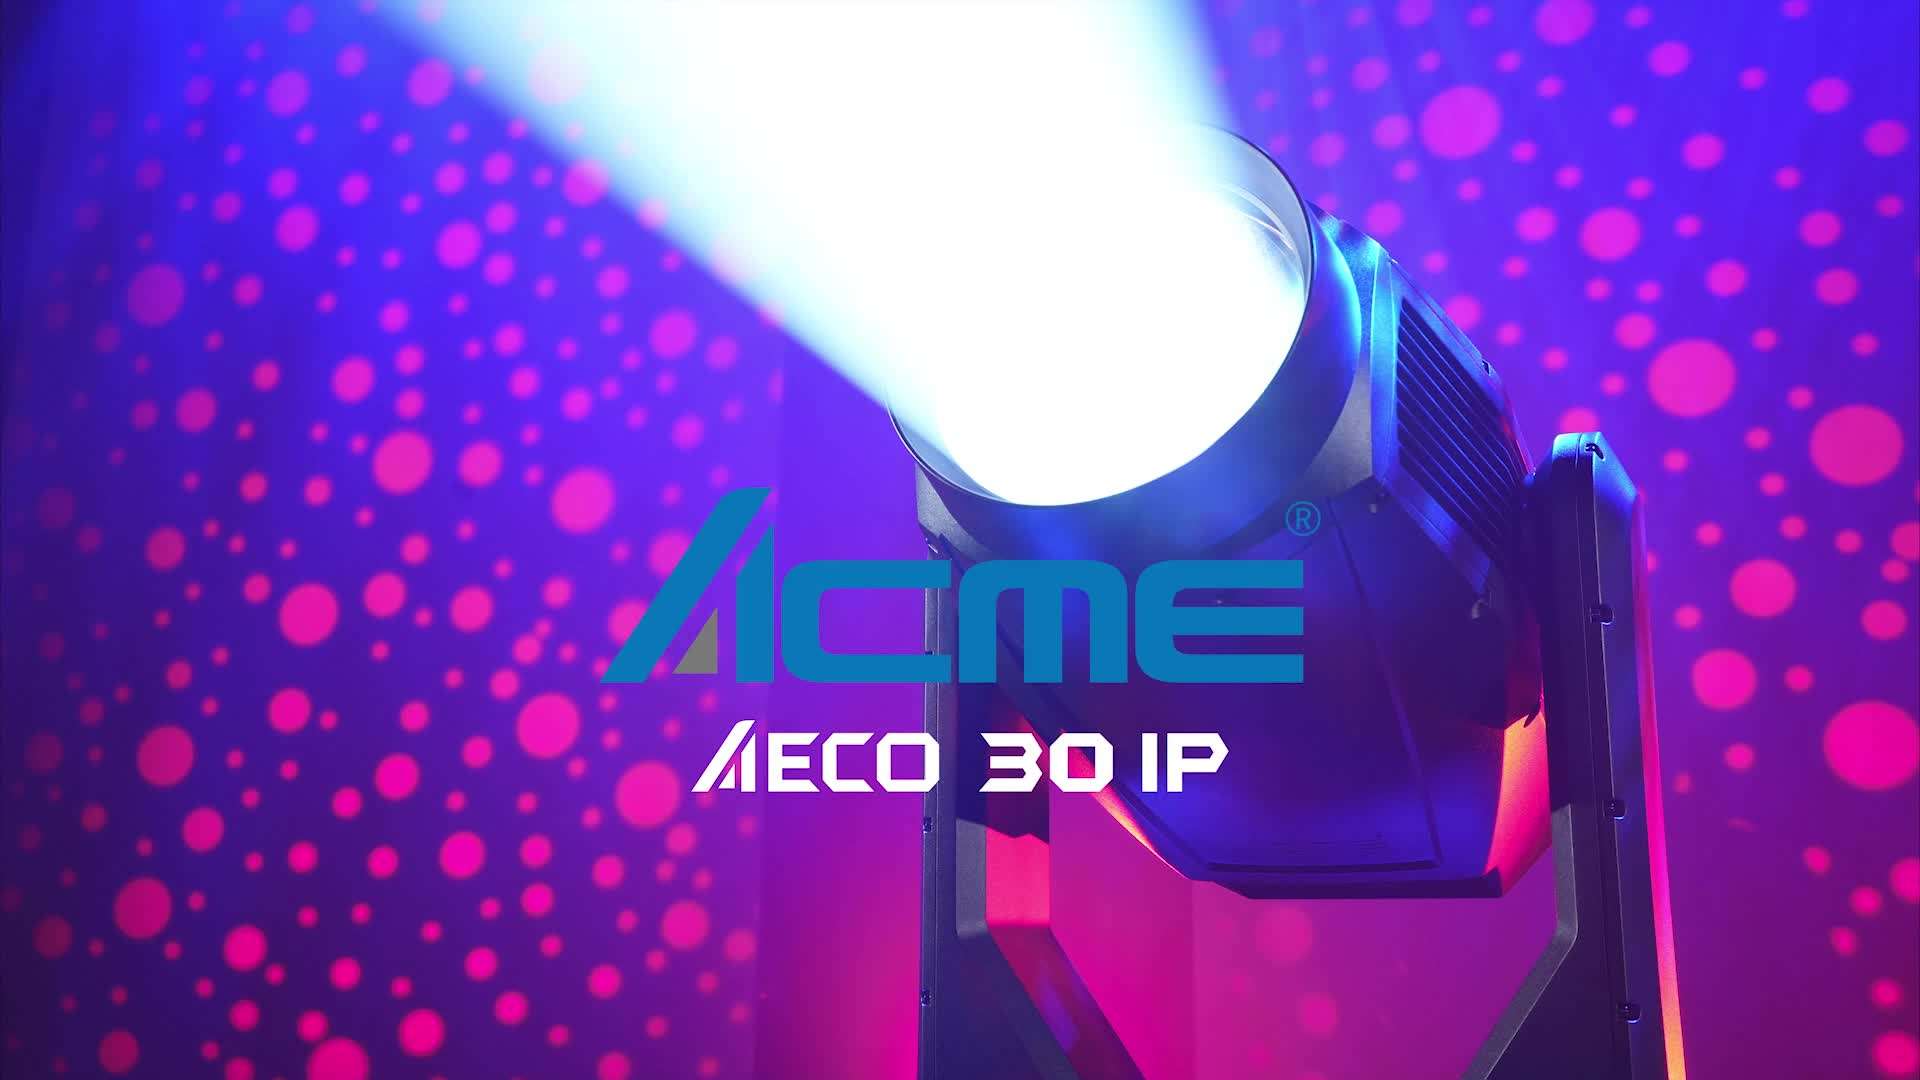 ACME AECO 30 IP 产品介绍